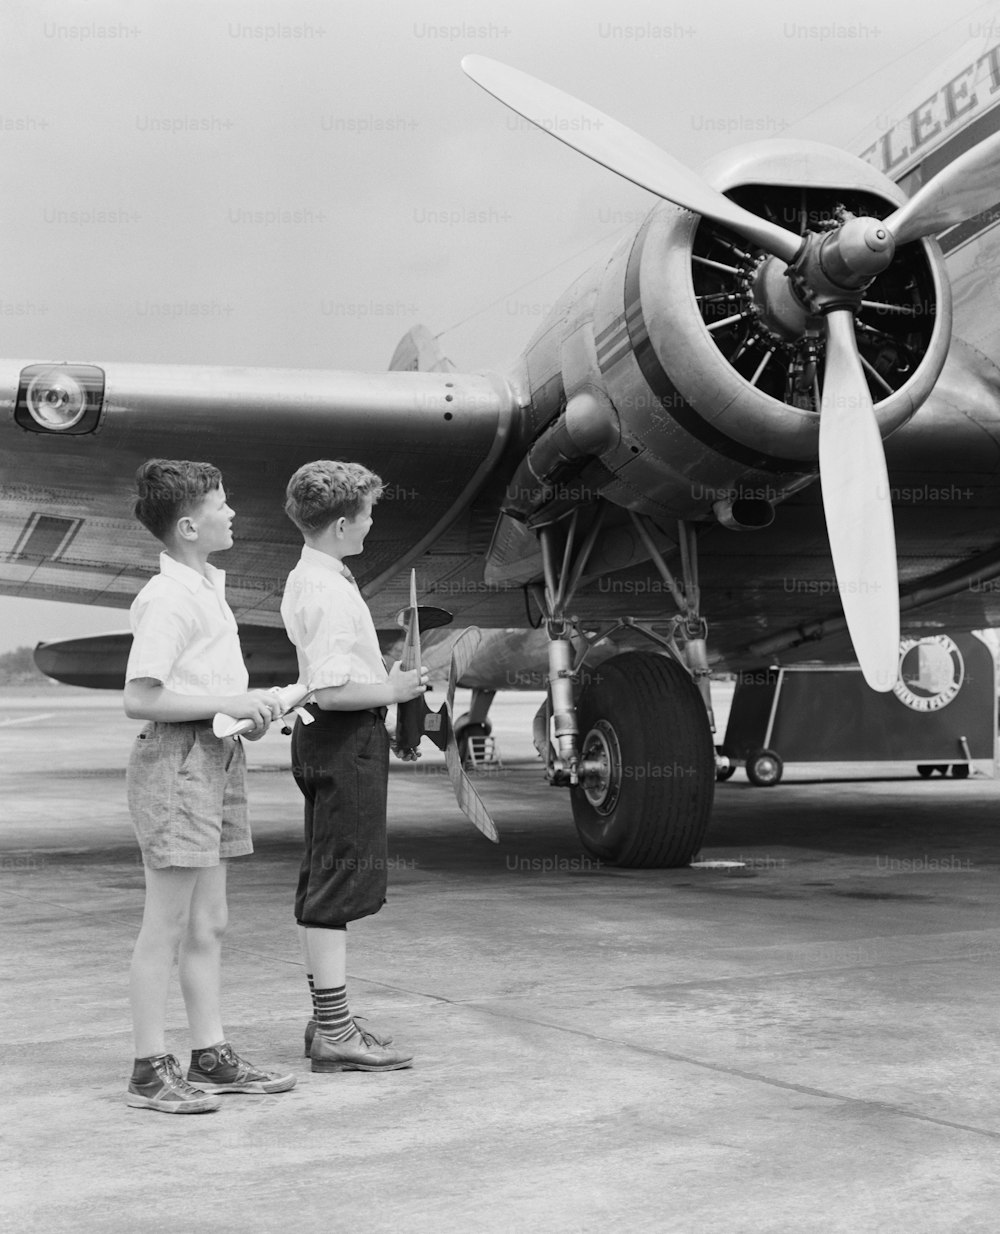 STATI UNITI - 1940 circa: due ragazzi in piedi accanto all'aeroplano ad elica, tenendo in mano un aereo giocattolo.